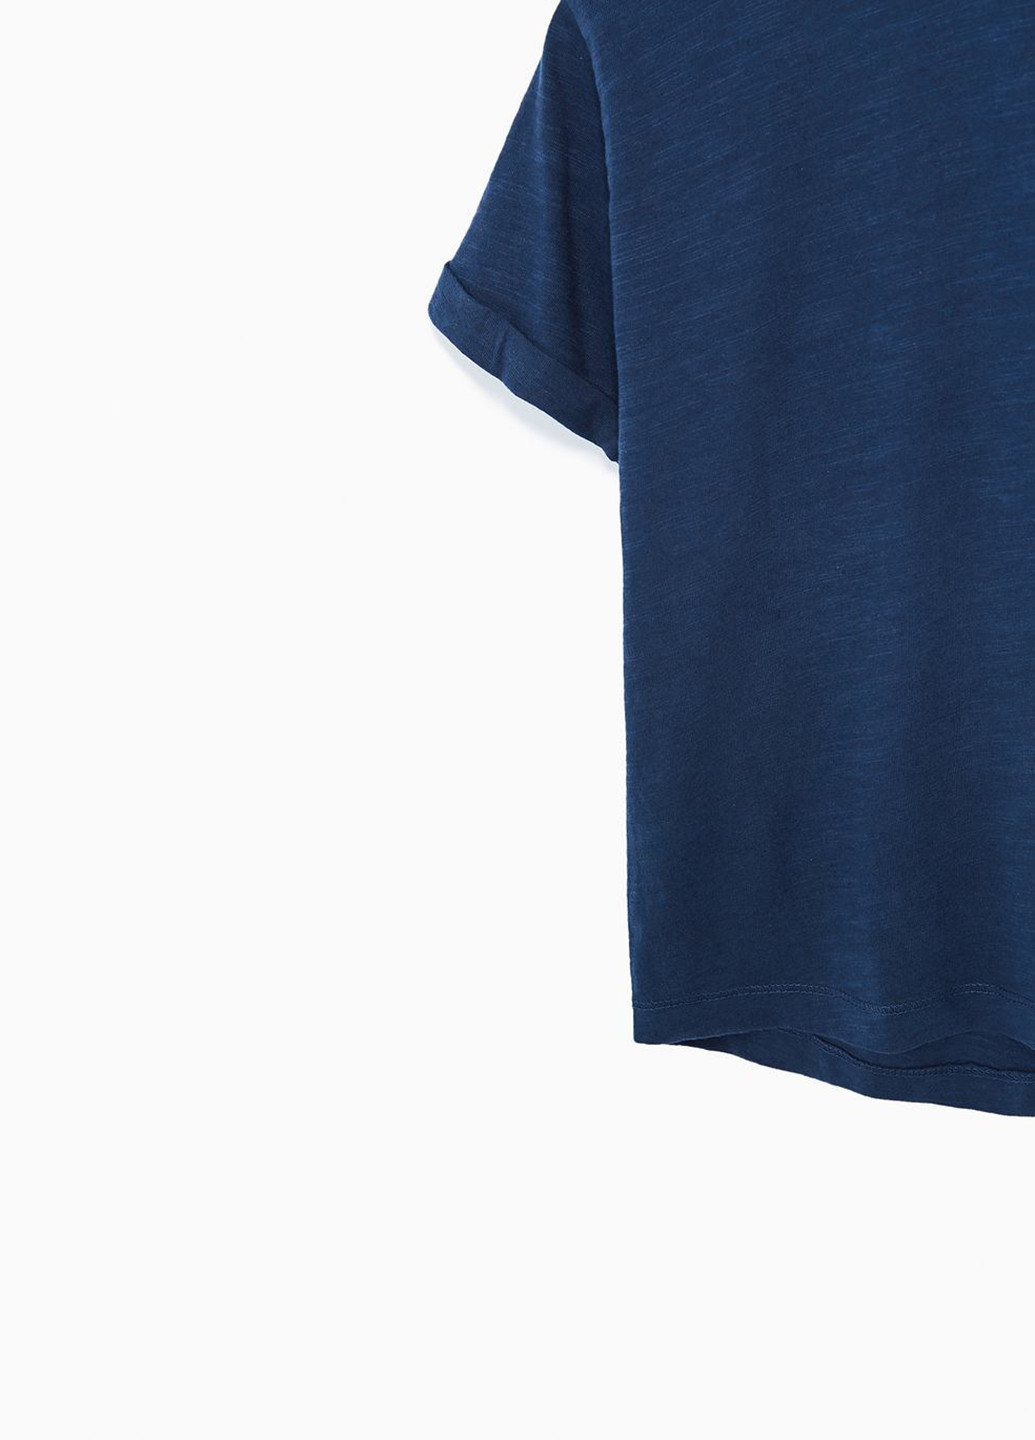 Темно-синяя летняя футболка с коротким рукавом Zara